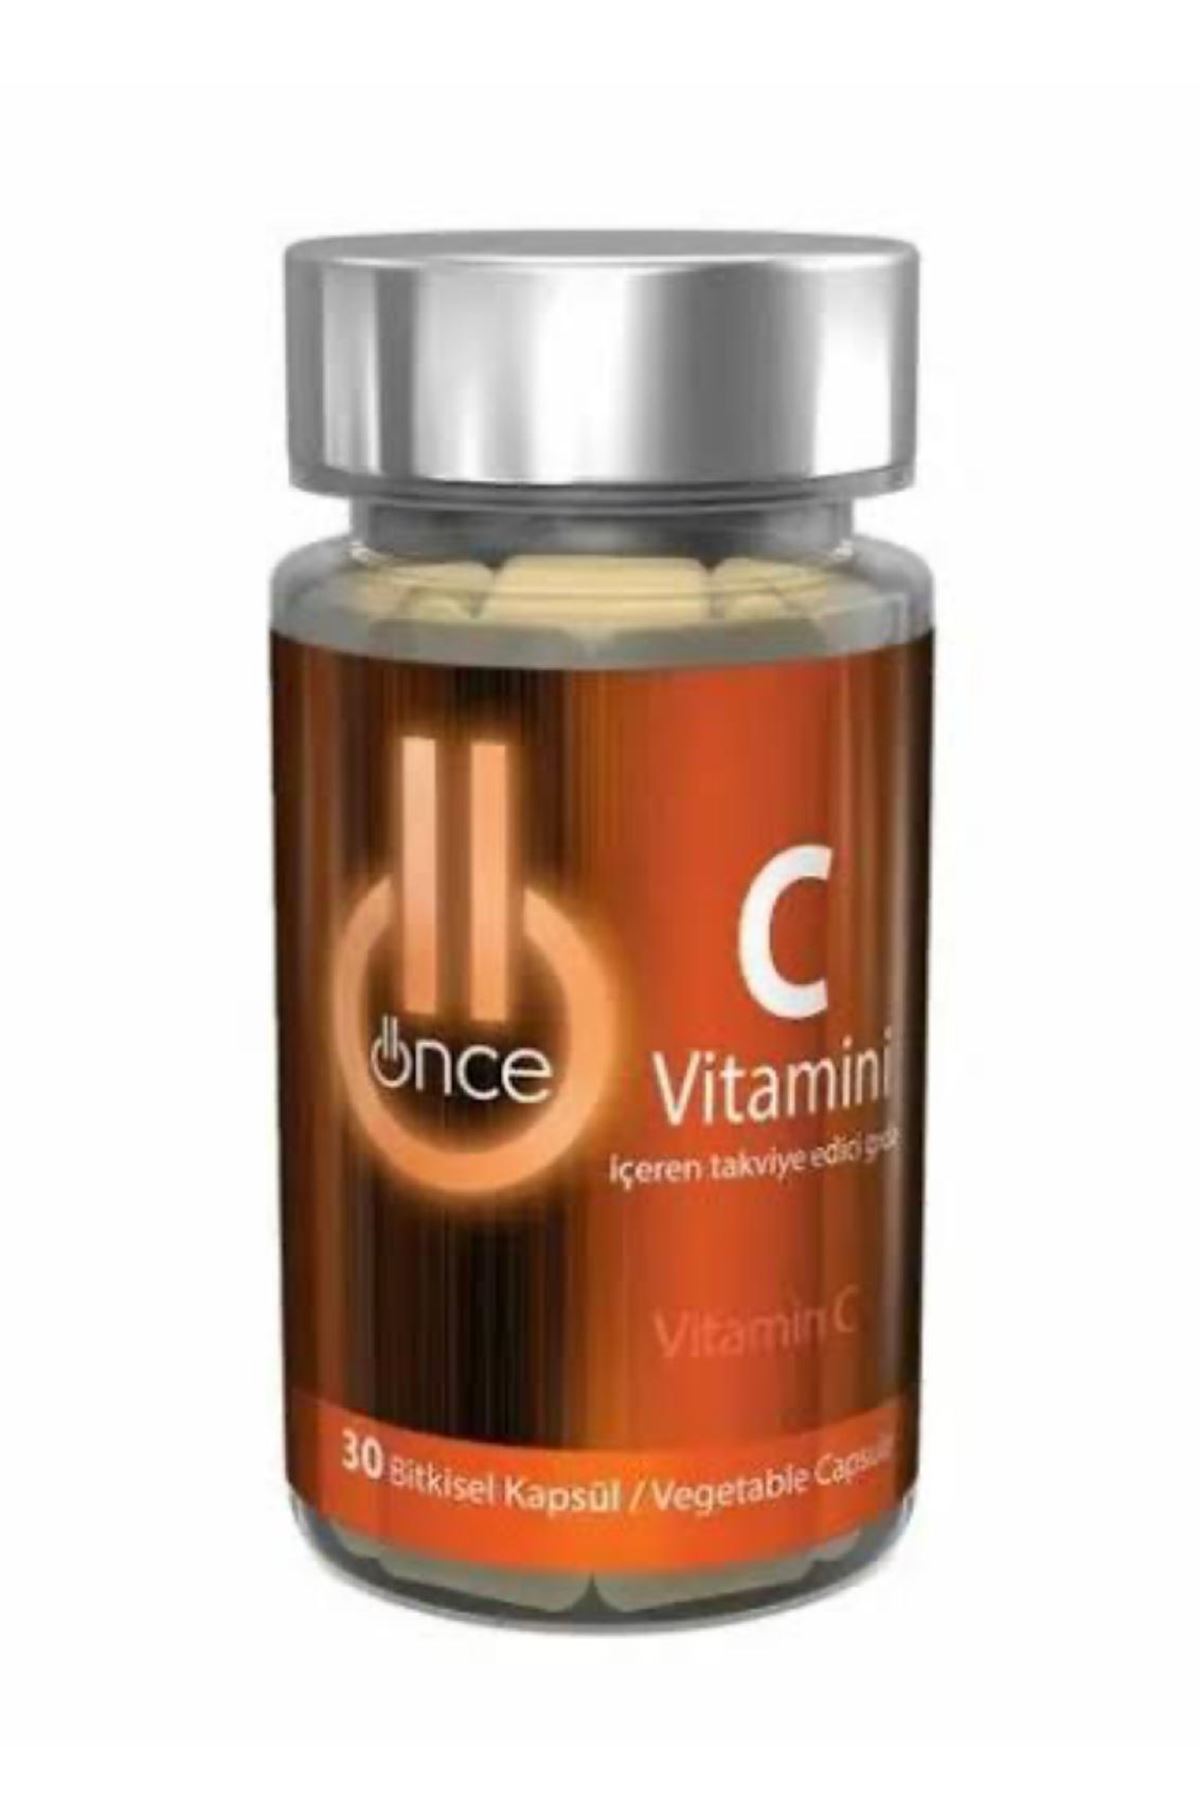 Önce C Vitamini İçeren Takviye Edici Gıda 30 Kapsül